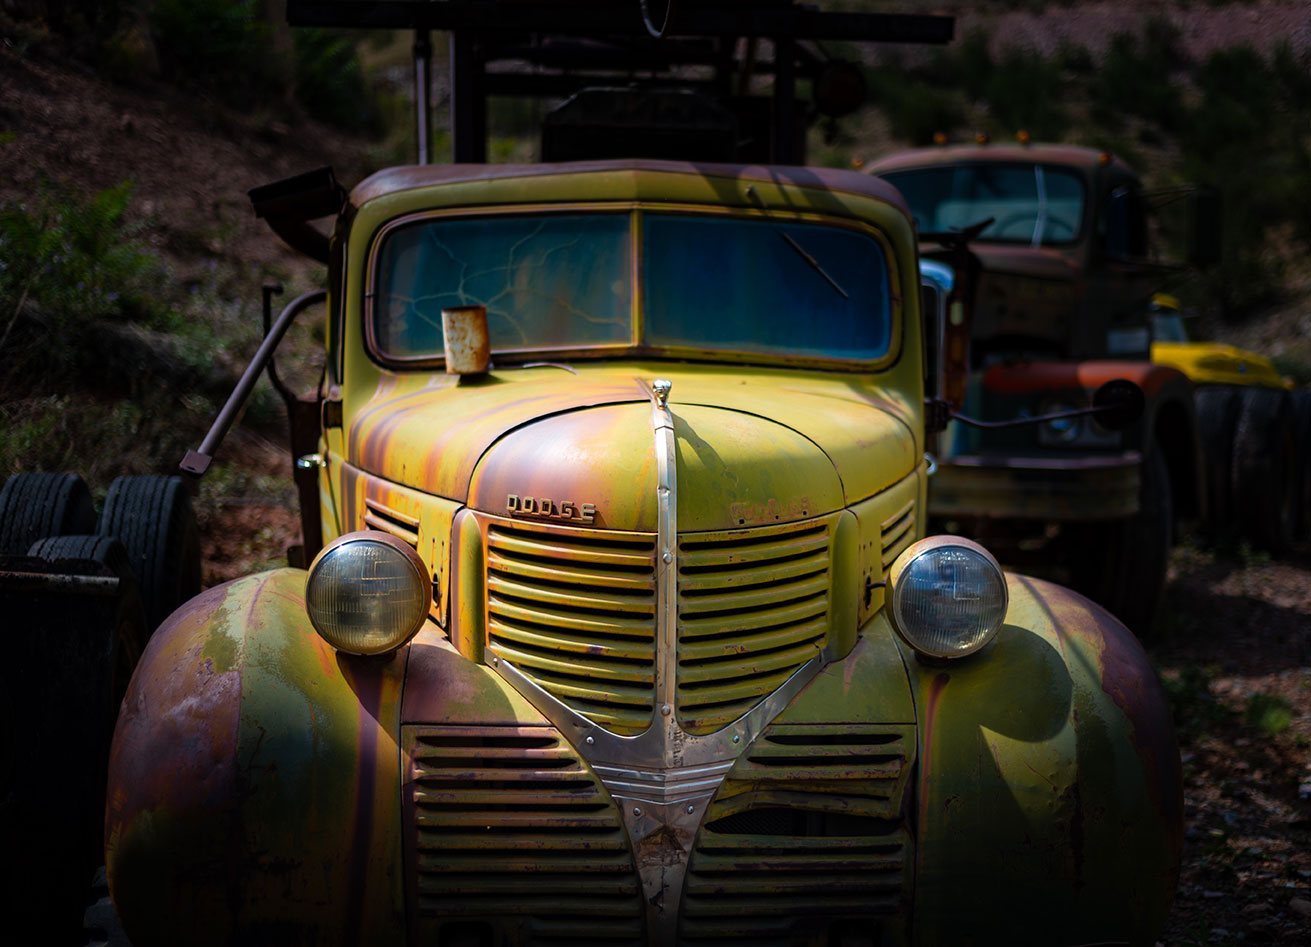 Vintage Dodge Truck, Antique, Automobile Adventure Lifestyle Photographer, Daniel Britton